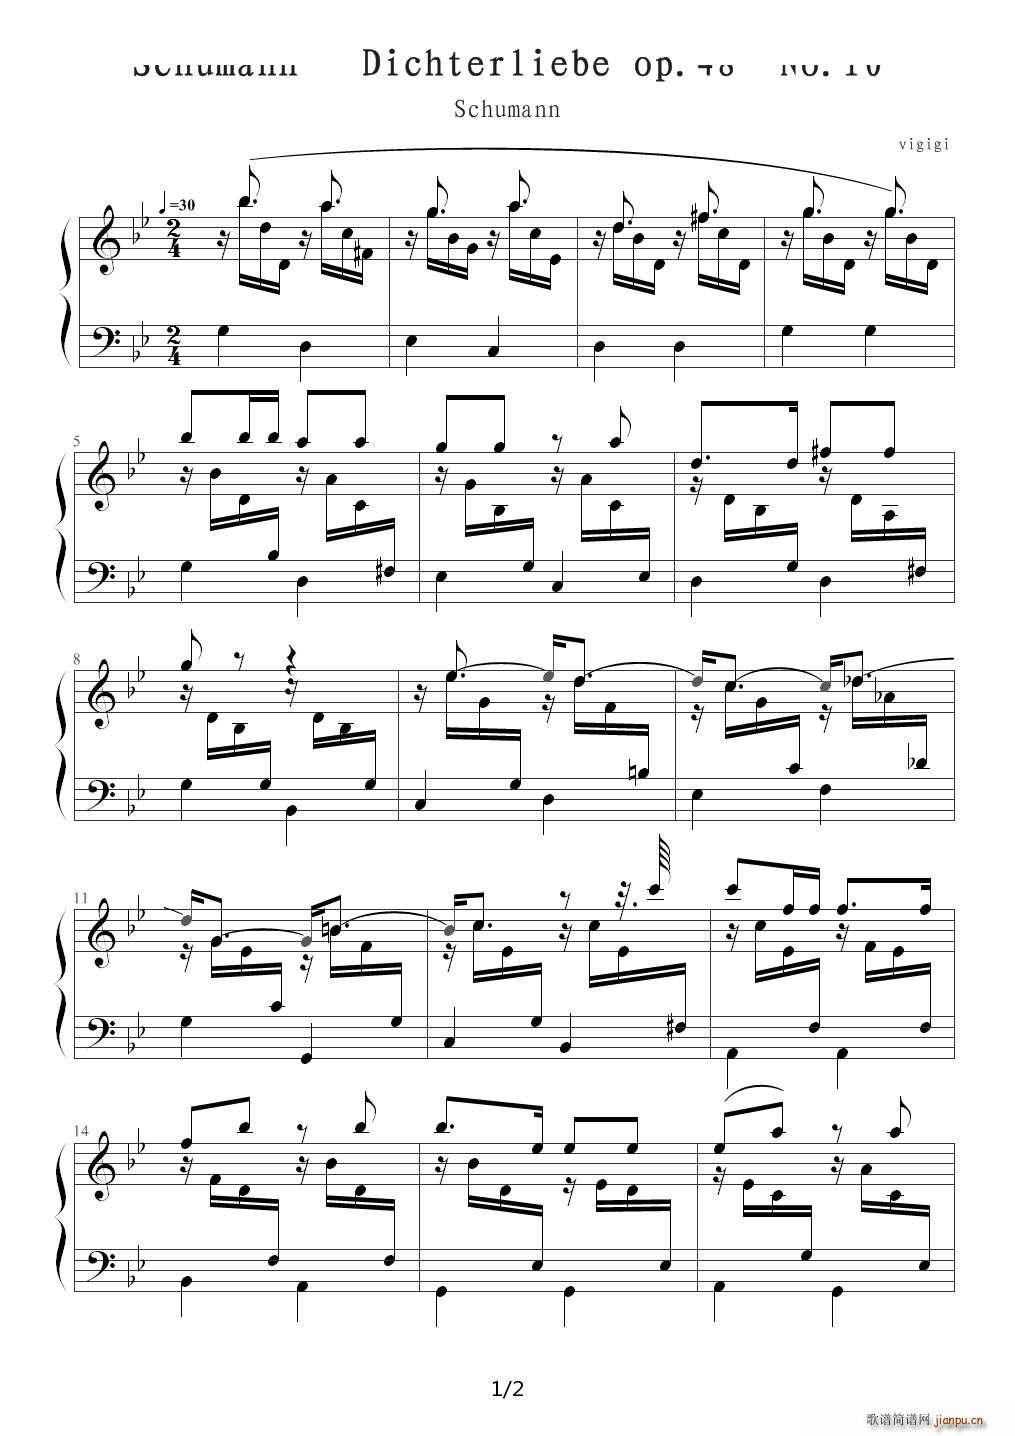 Dichterliebe op 48 No 10 Schumann B()1